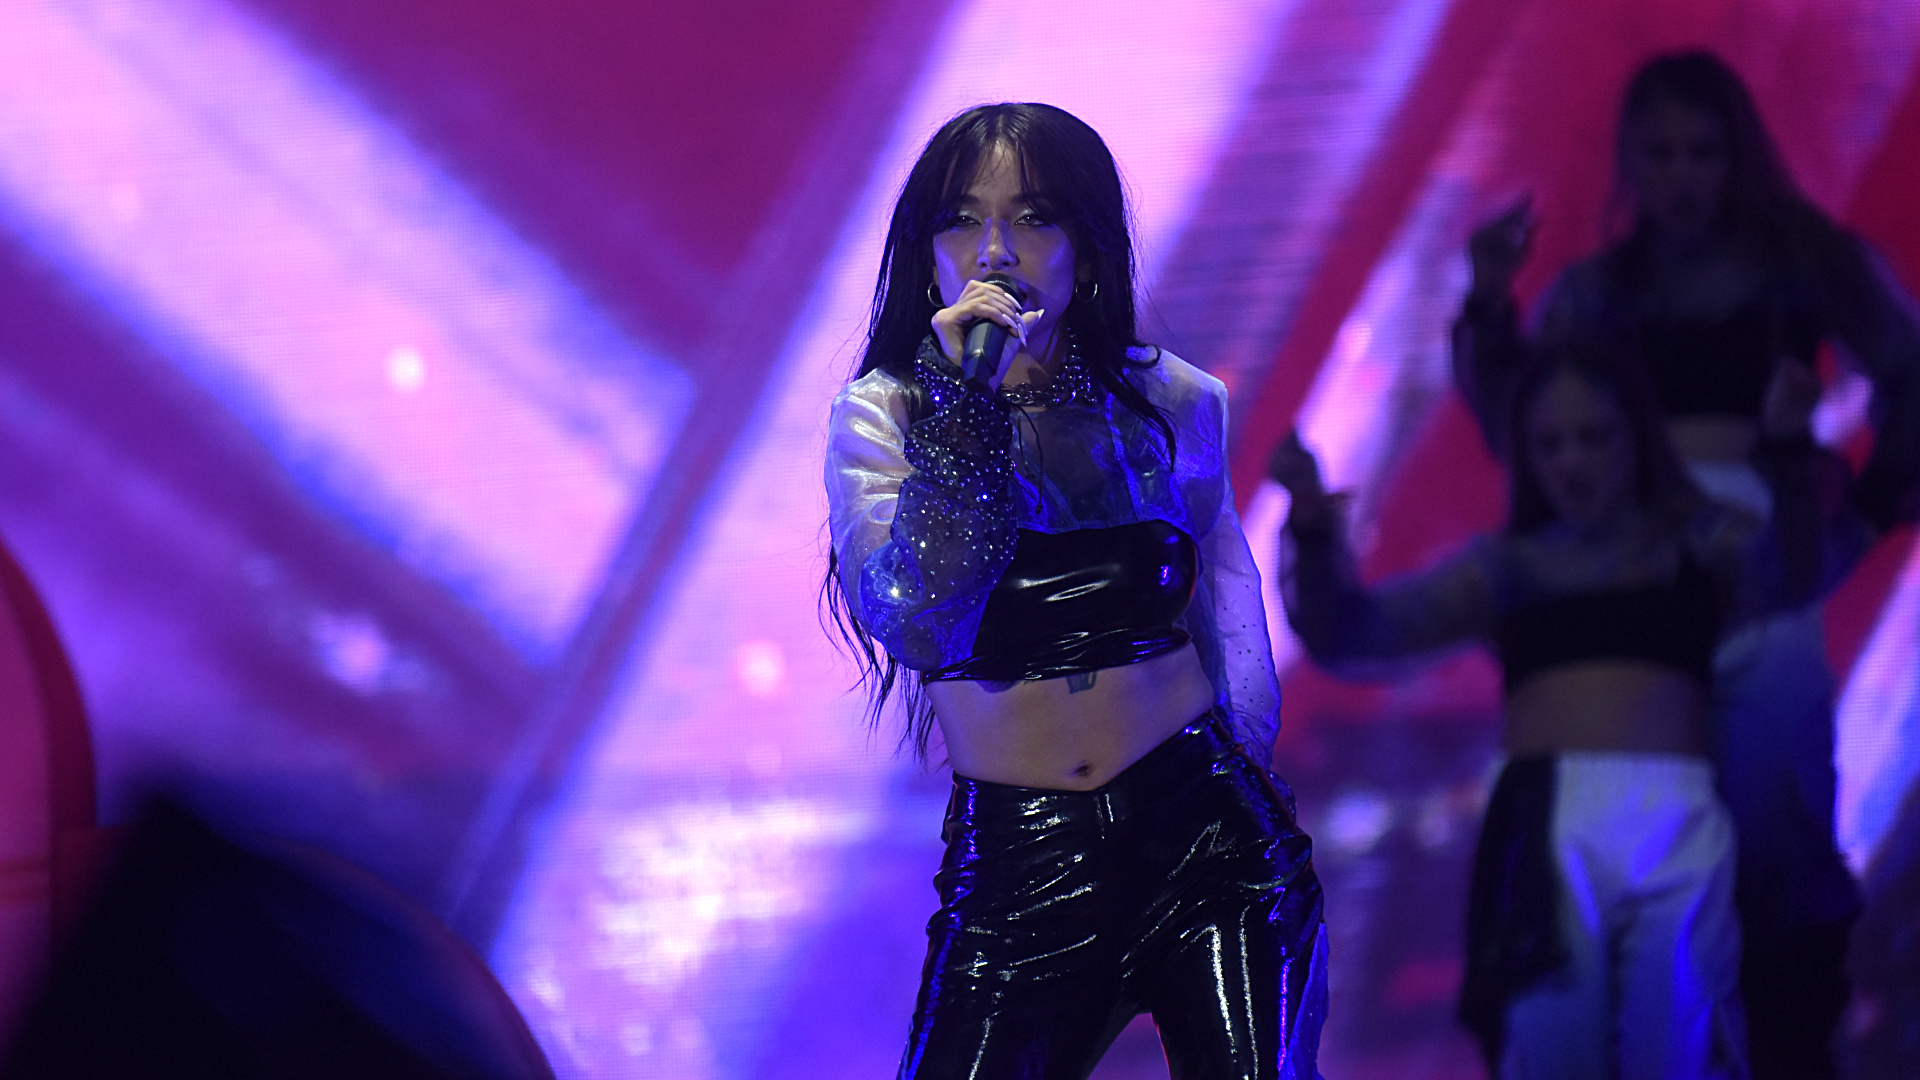 La artista cantó temas como "Miénteme", "Automático" y "Doble vida", entre los más coreados